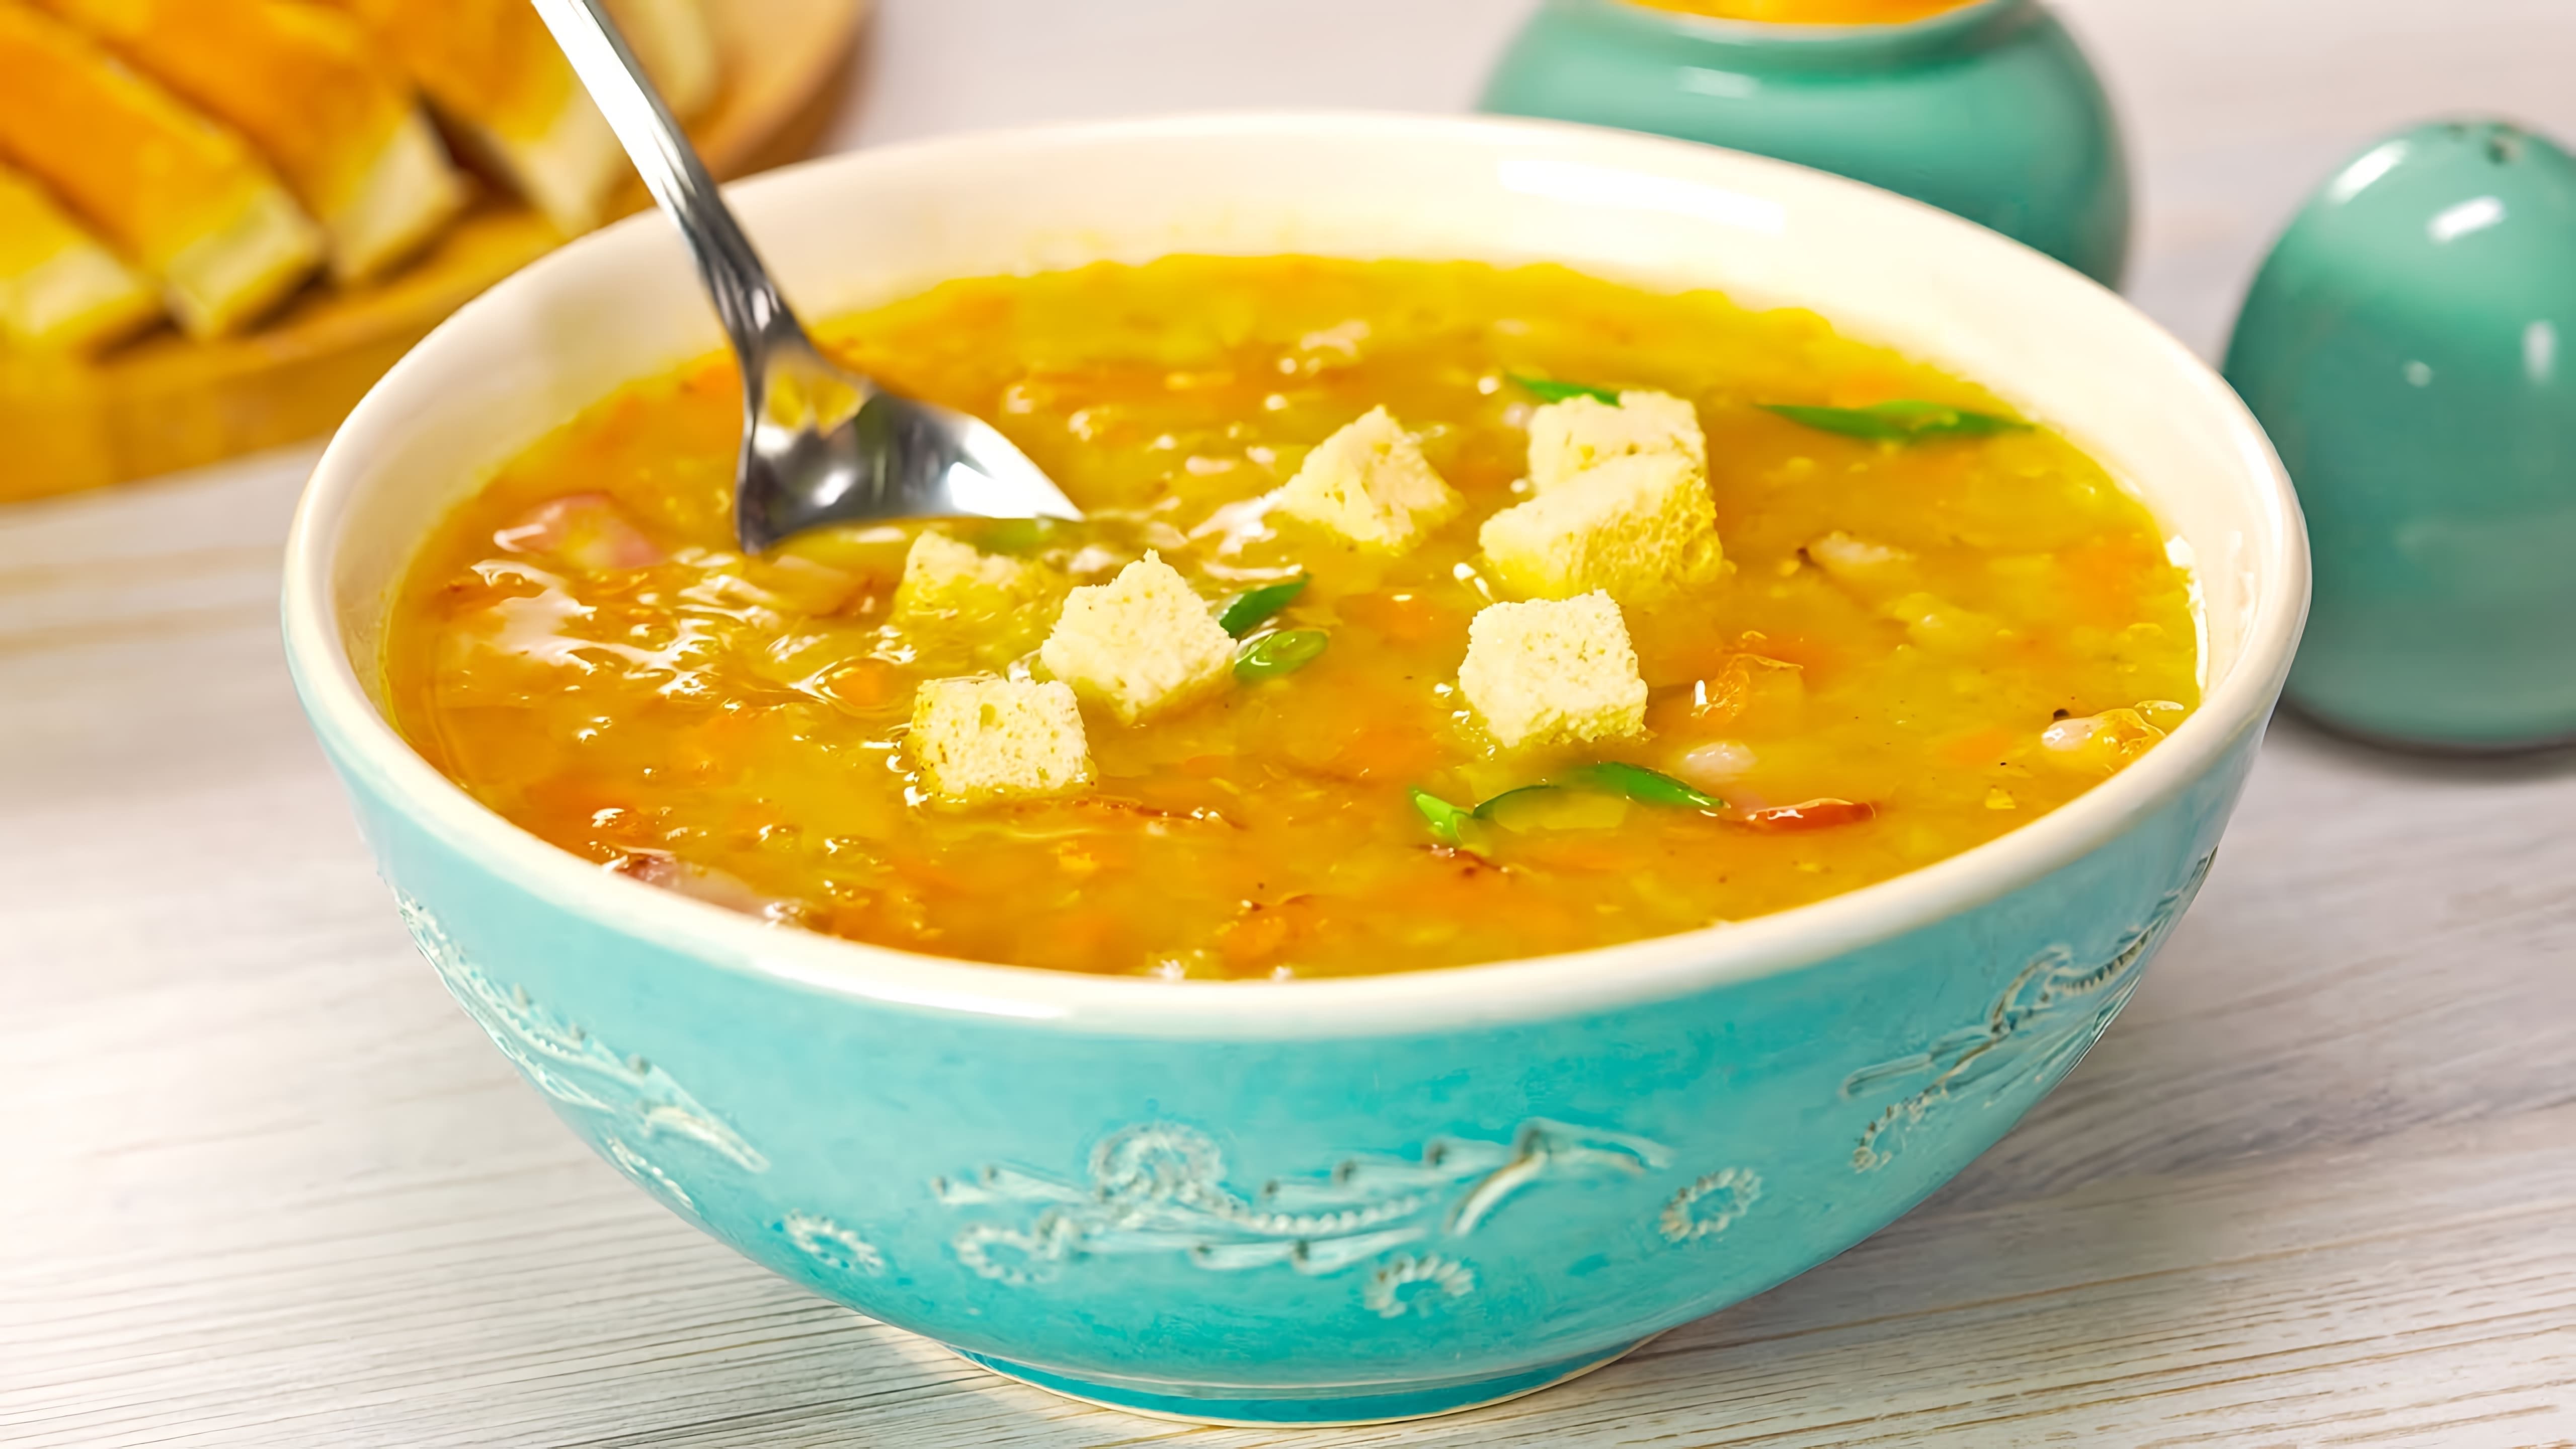 В этом видео демонстрируется рецепт приготовления горохового супа с беконом